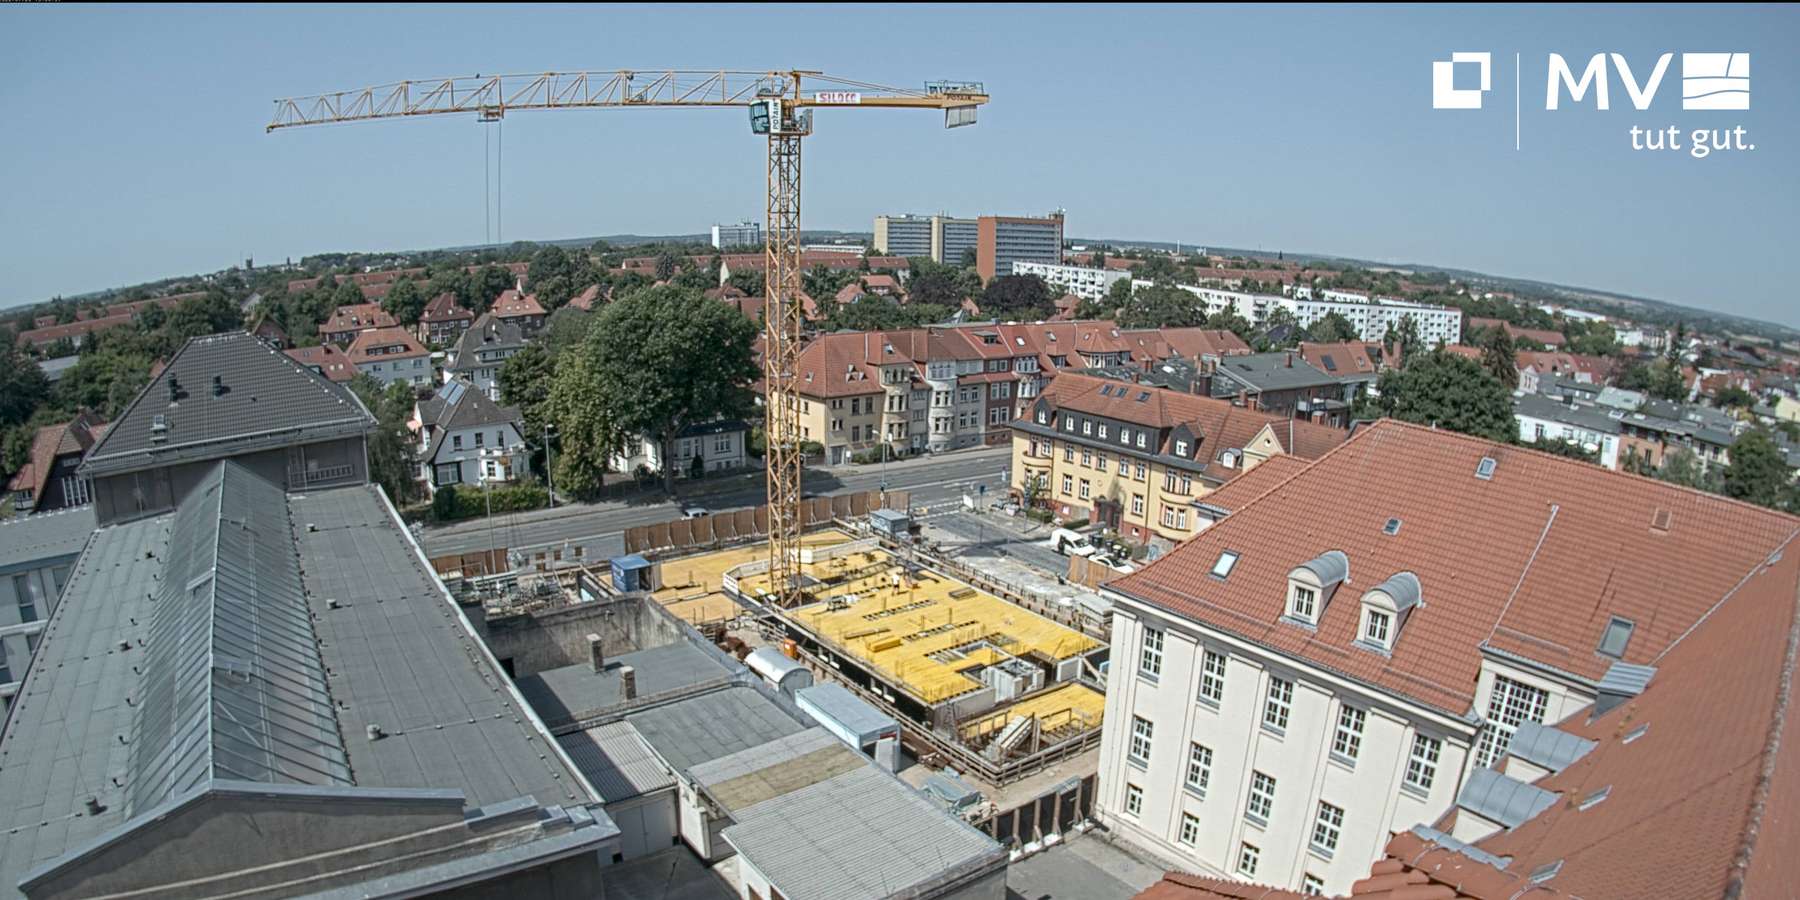 Blick auf eine Baustelle. Ein Kran steht in der Bildmitte. Im Hintergrund sind Häuser und der Horizont zu sehen. © 2022 SBL Schwerin